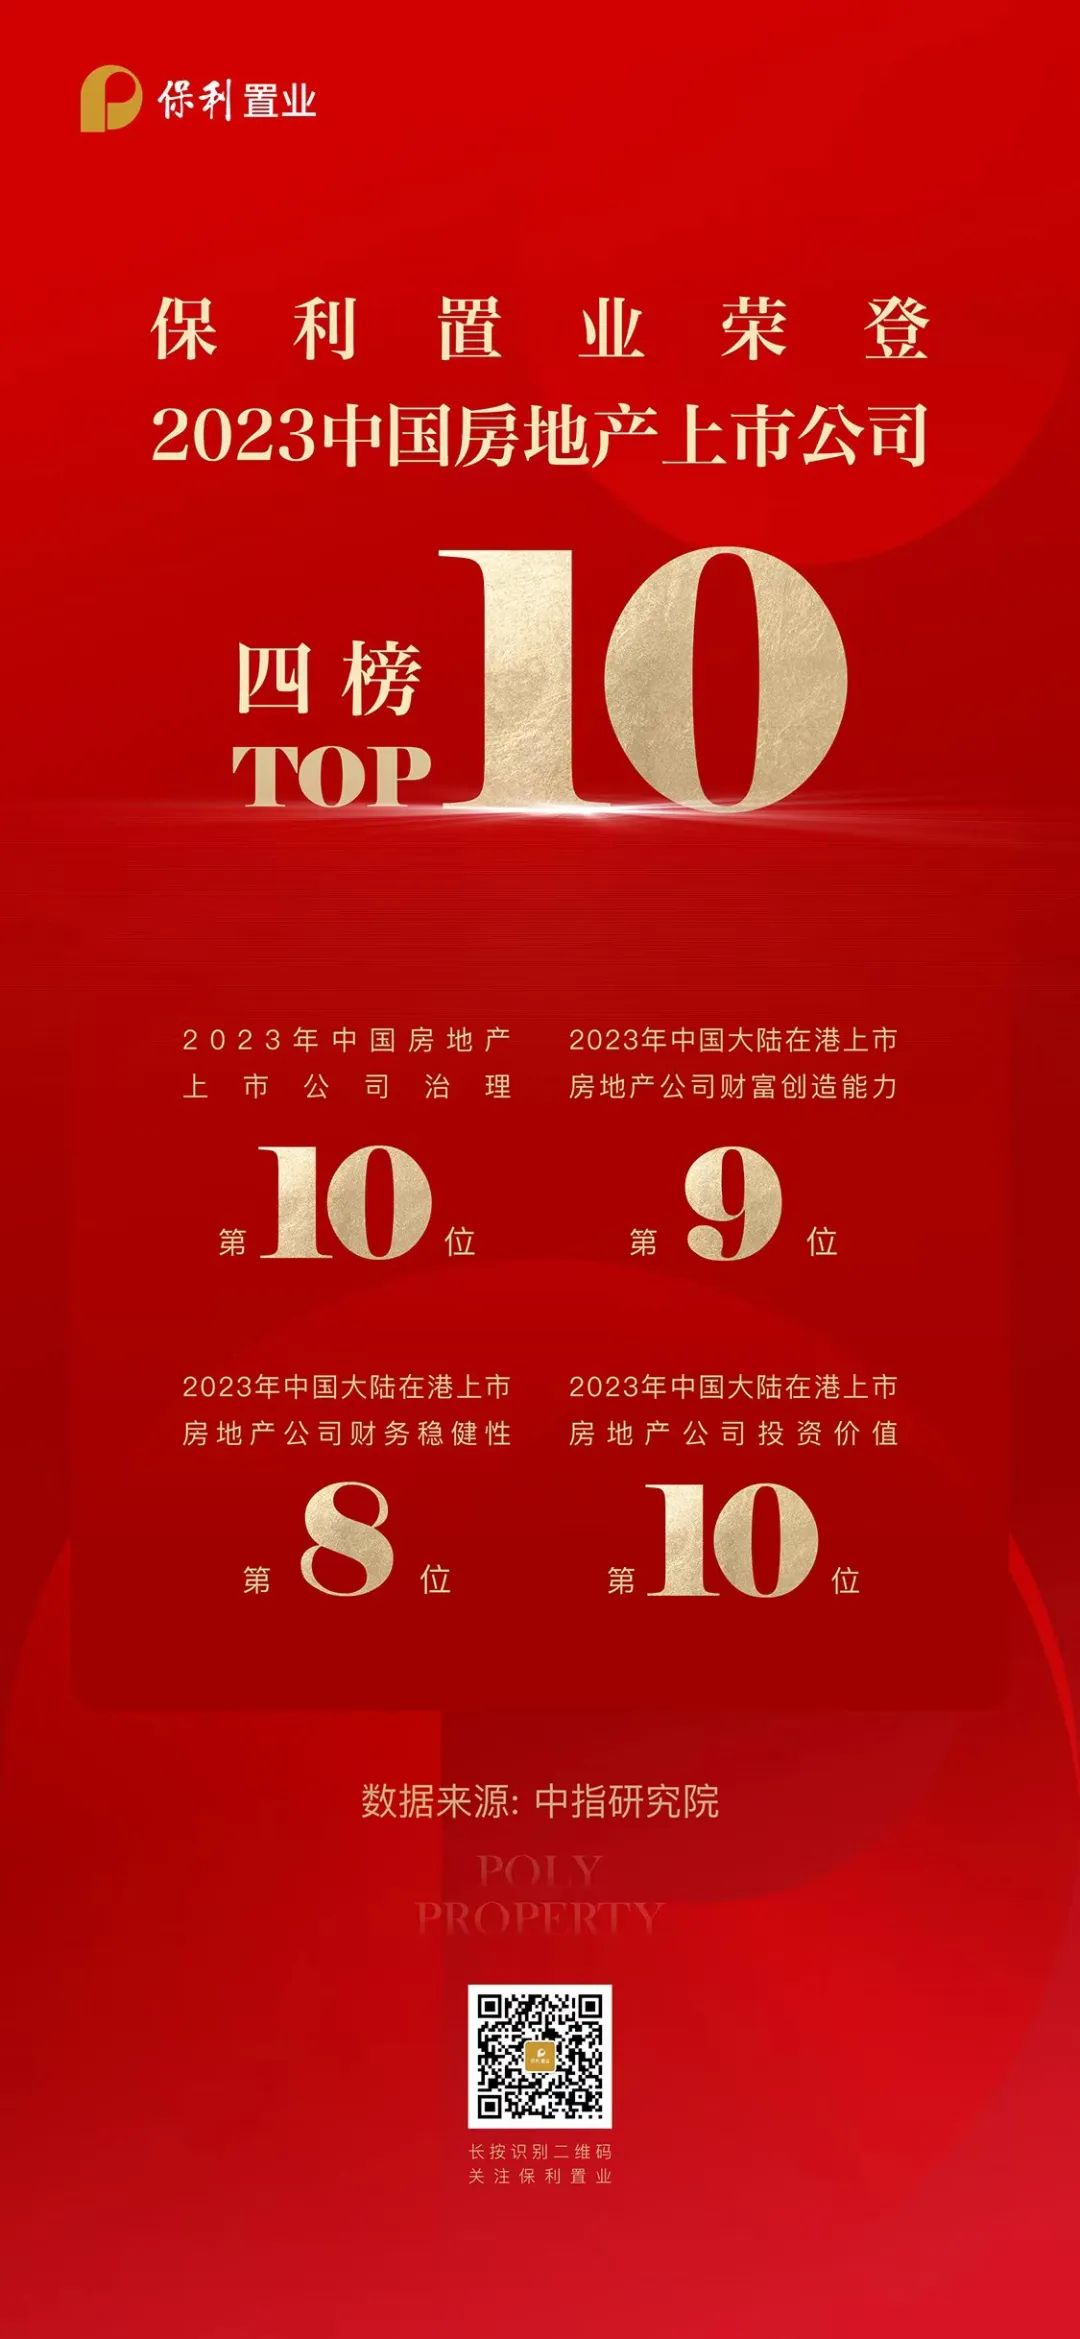 四榜TOP10，保利置业荣登“2023中国优秀房地产上市公司”多项榜单